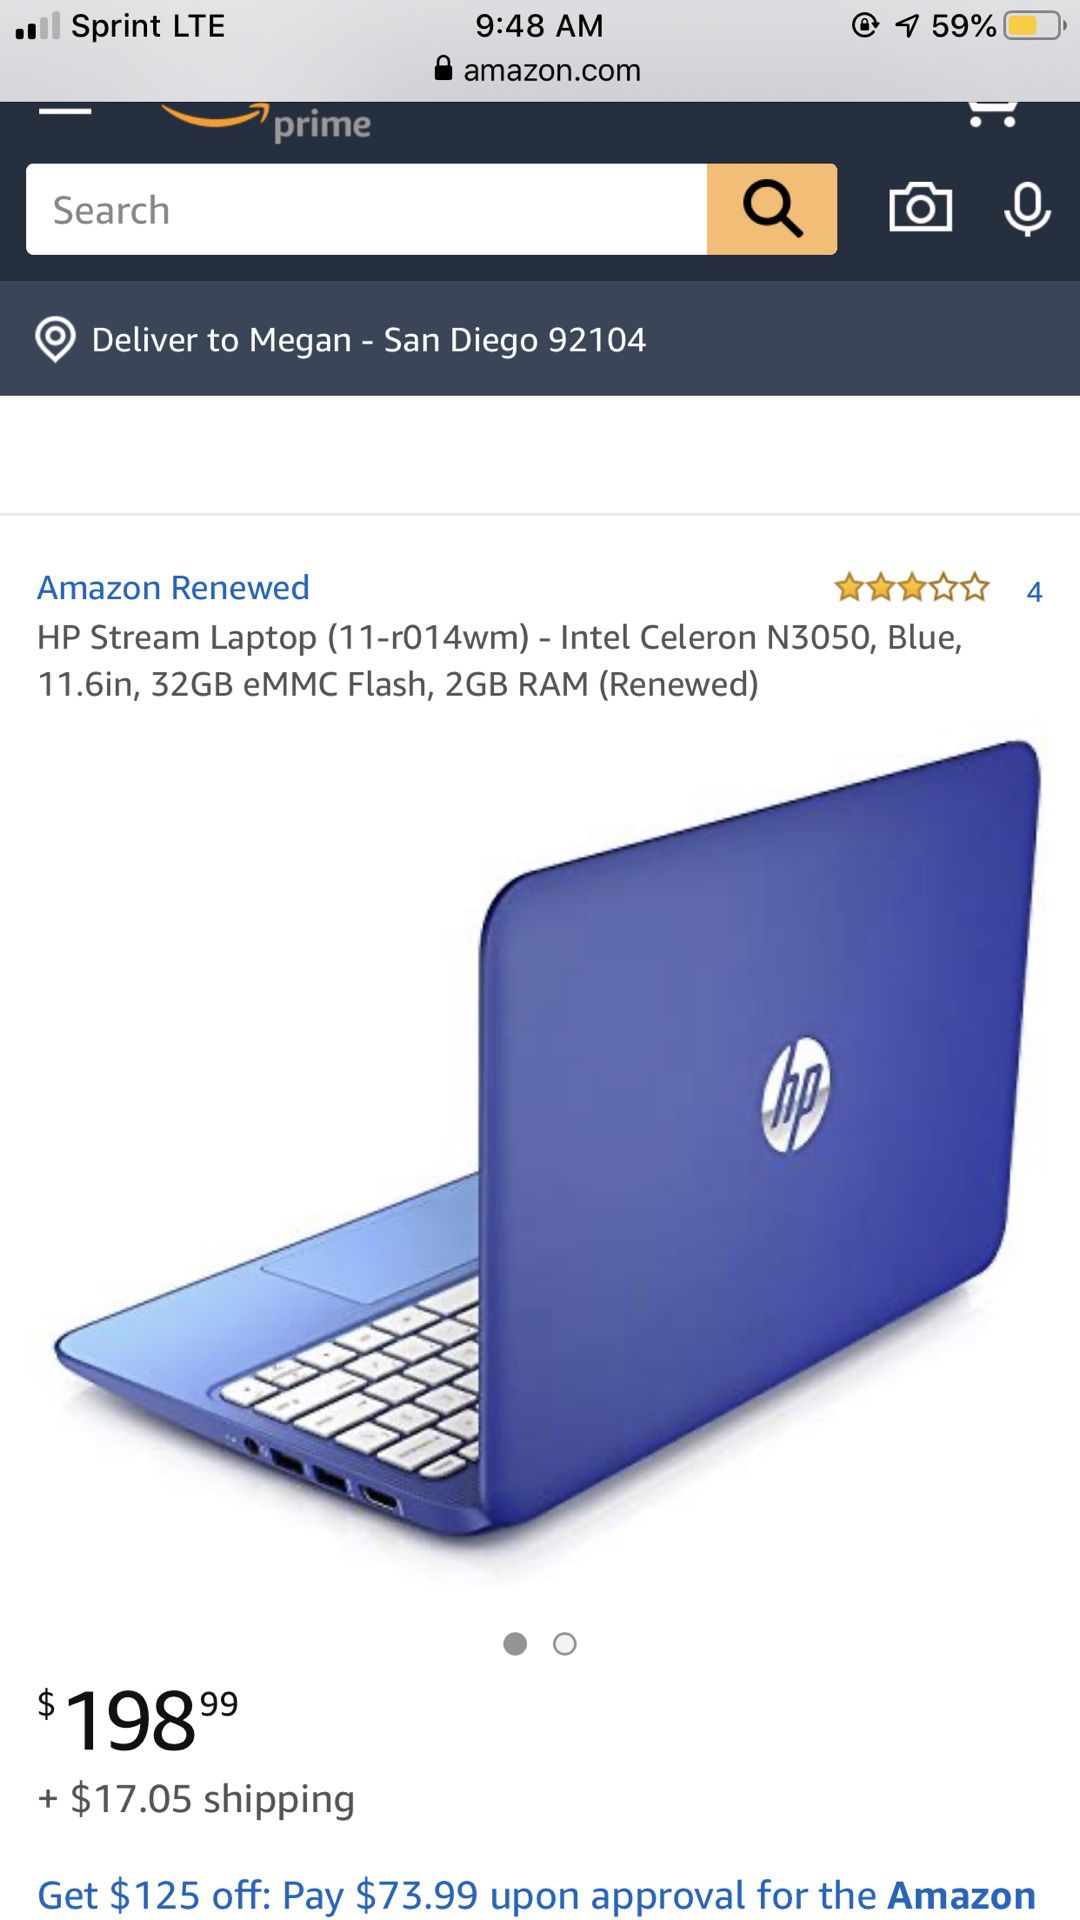 HP Stream Laptop (11-r014wm) - Intel Celeron N3050, Blue, 11.6in, 32GB eMMC Flash, 2GB RAM